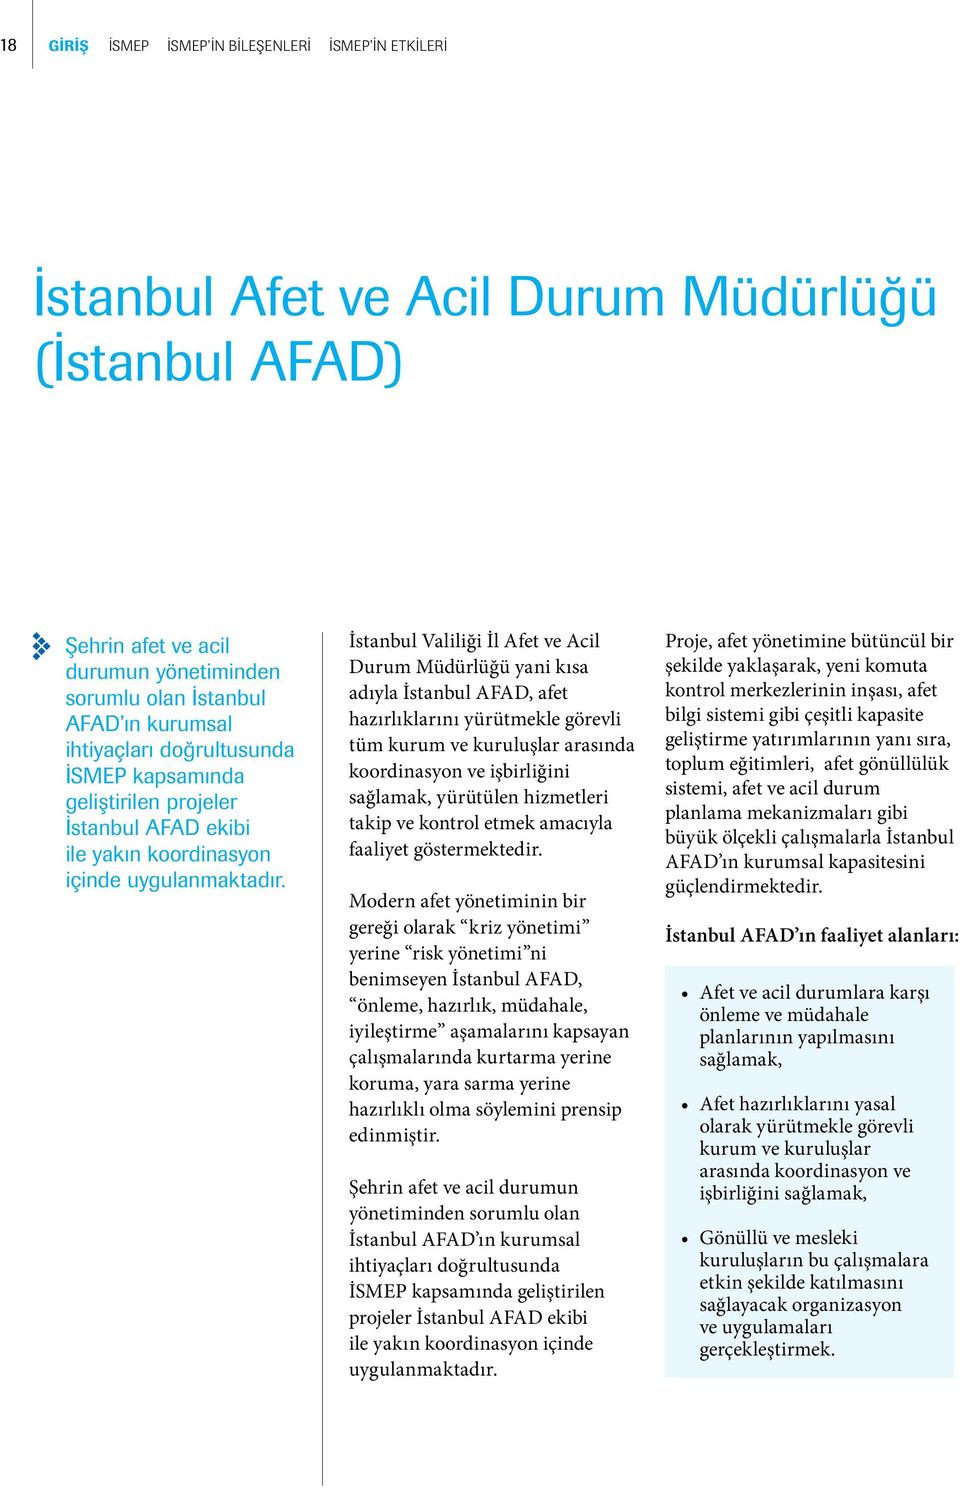 İstanbul Valiliği İl Afet ve Acil Durum Müdürlüğü yani kısa adıyla İstanbul AFAD, afet hazırlıklarını yürütmekle görevli tüm kurum ve kuruluşlar arasında koordinasyon ve işbirliğini sağlamak,